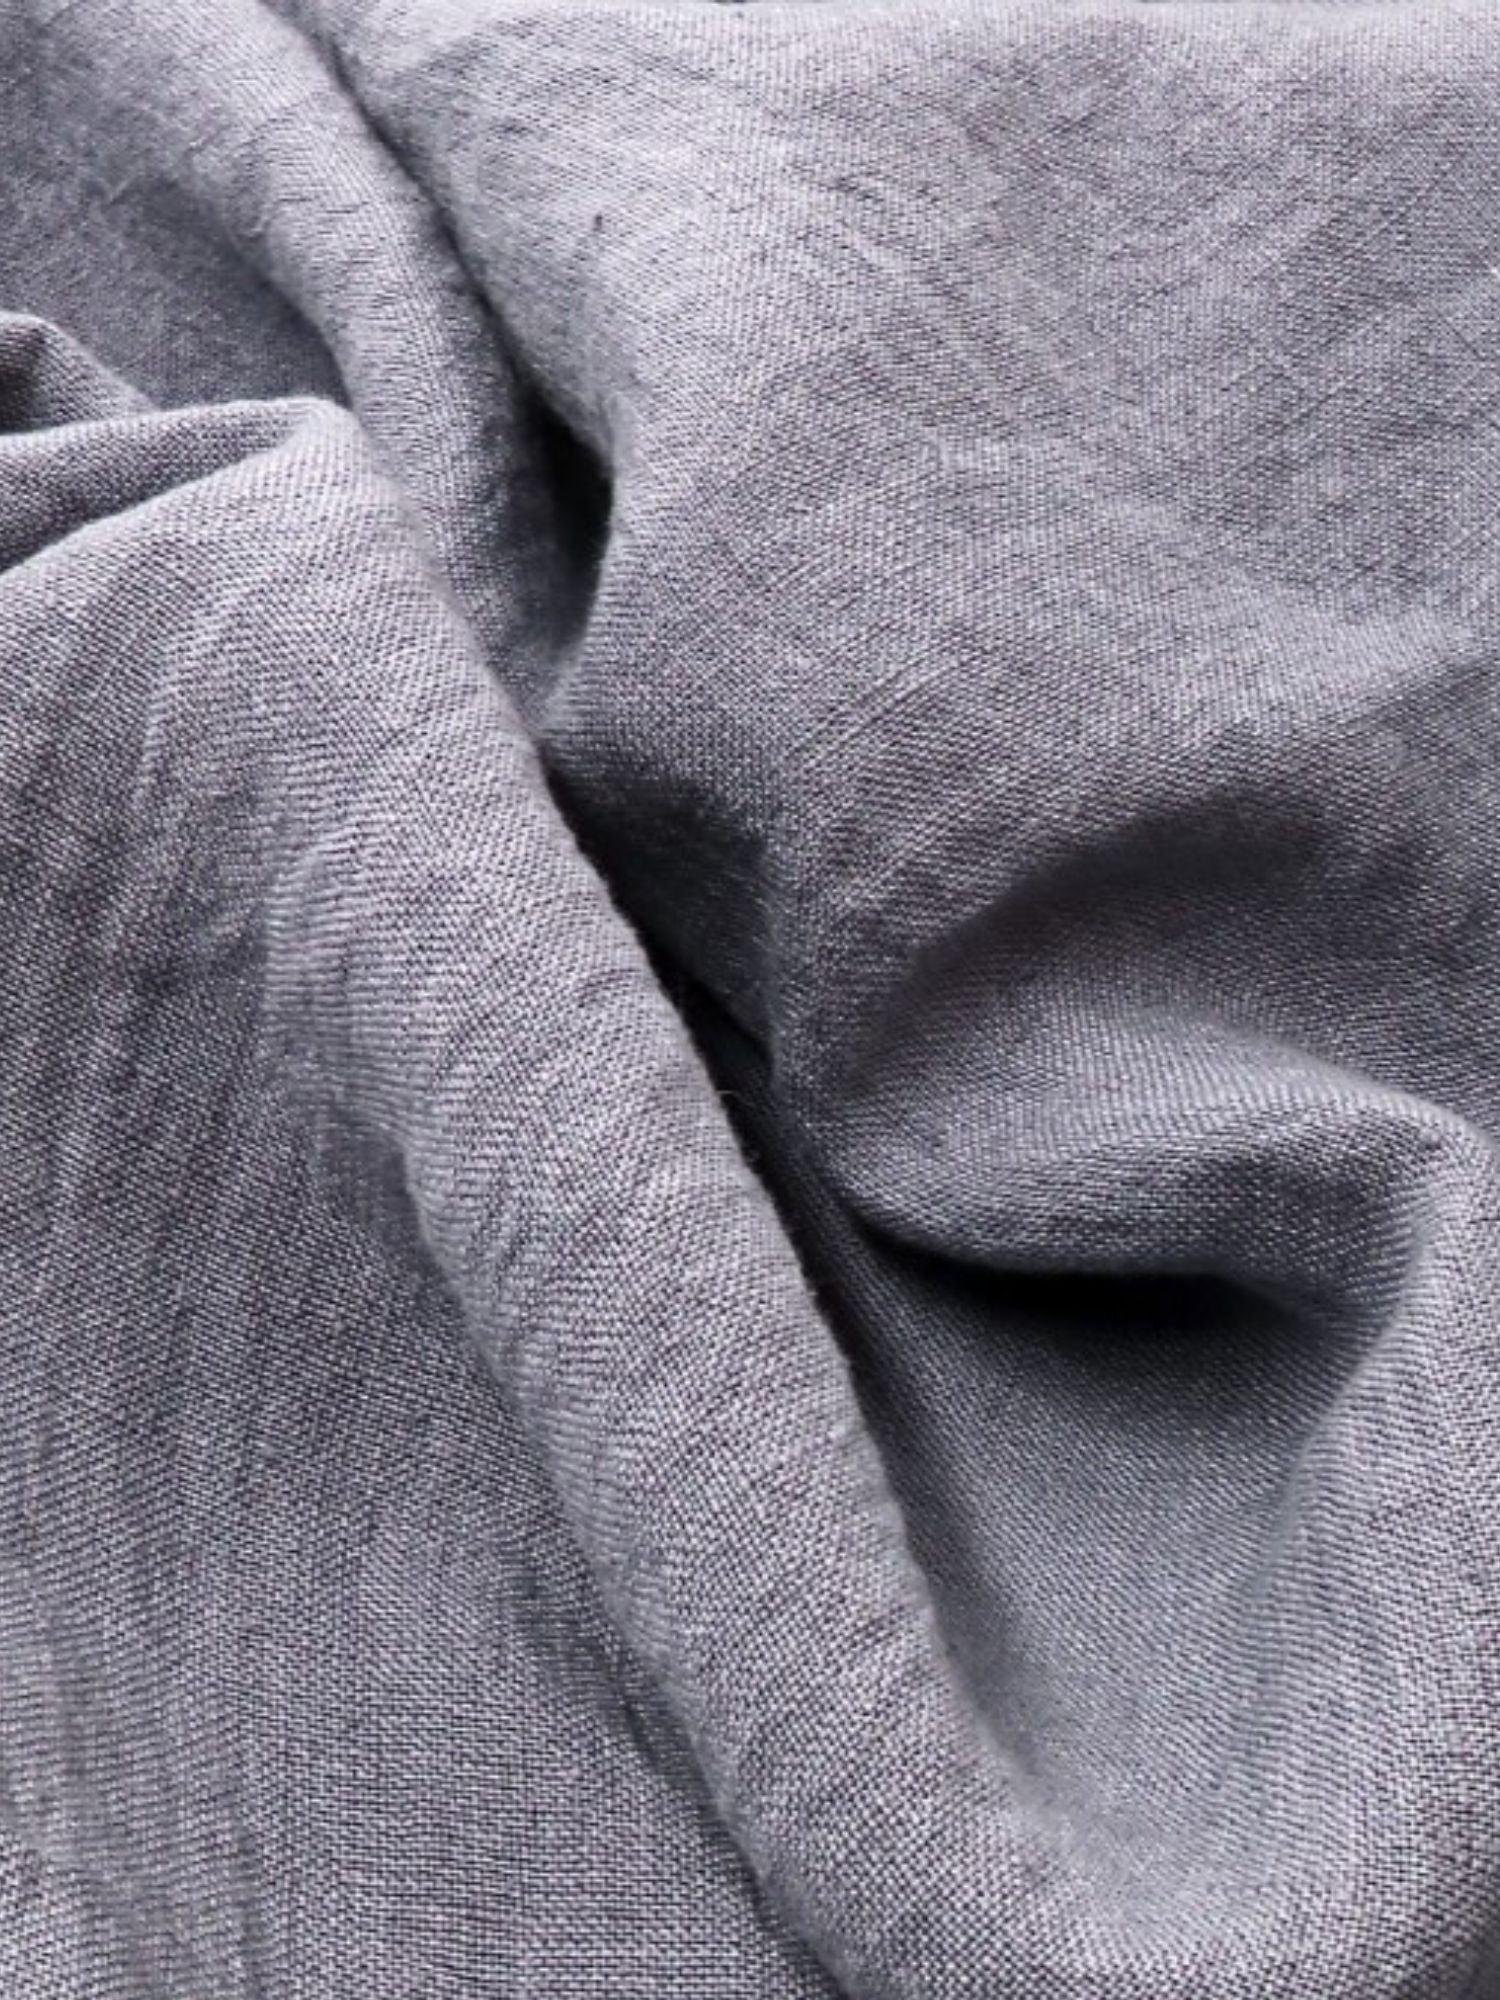 Oxford Linen Pillowcase - Bedroom, Linen pillowcase - FlaxLin Eco Textiles